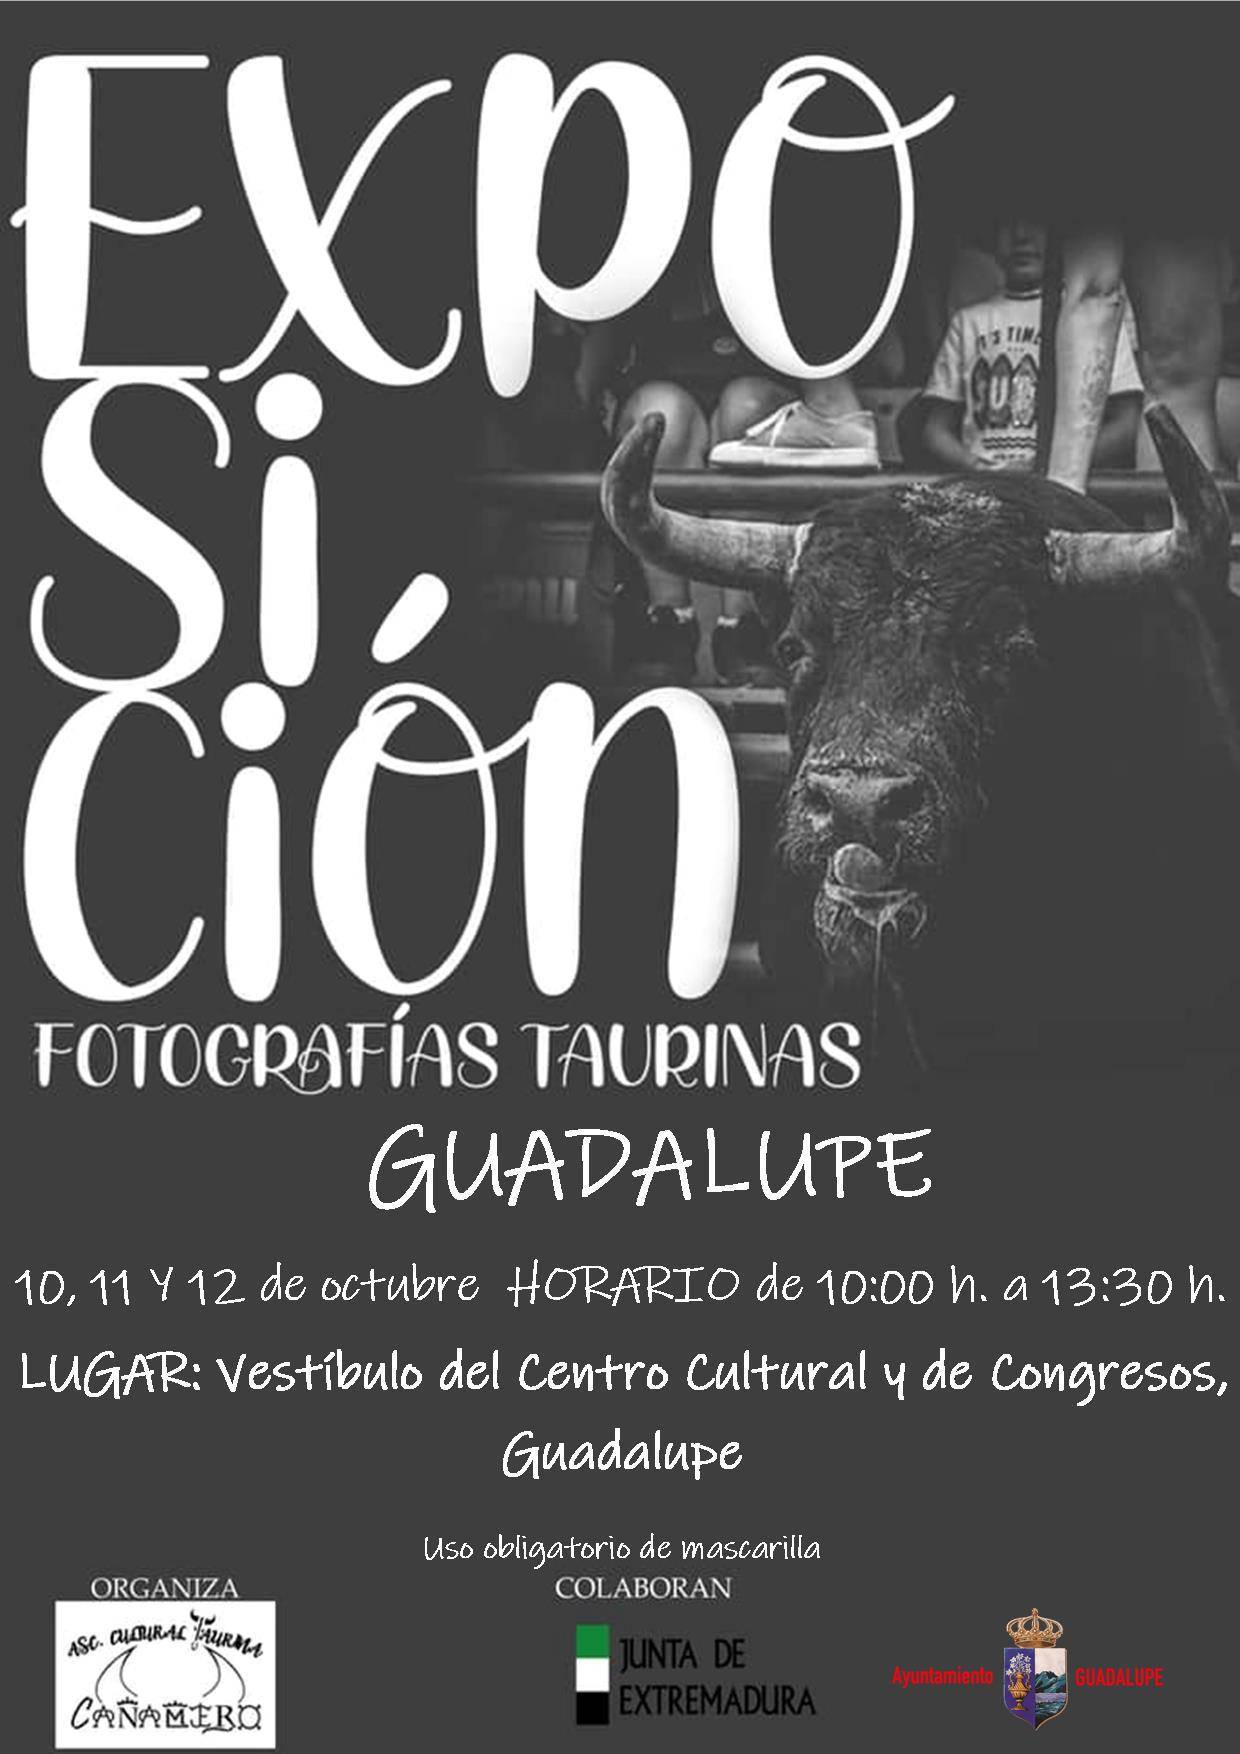 Exposición de fotografías taurinas (octubre 2021) - Guadalupe (Cáceres)